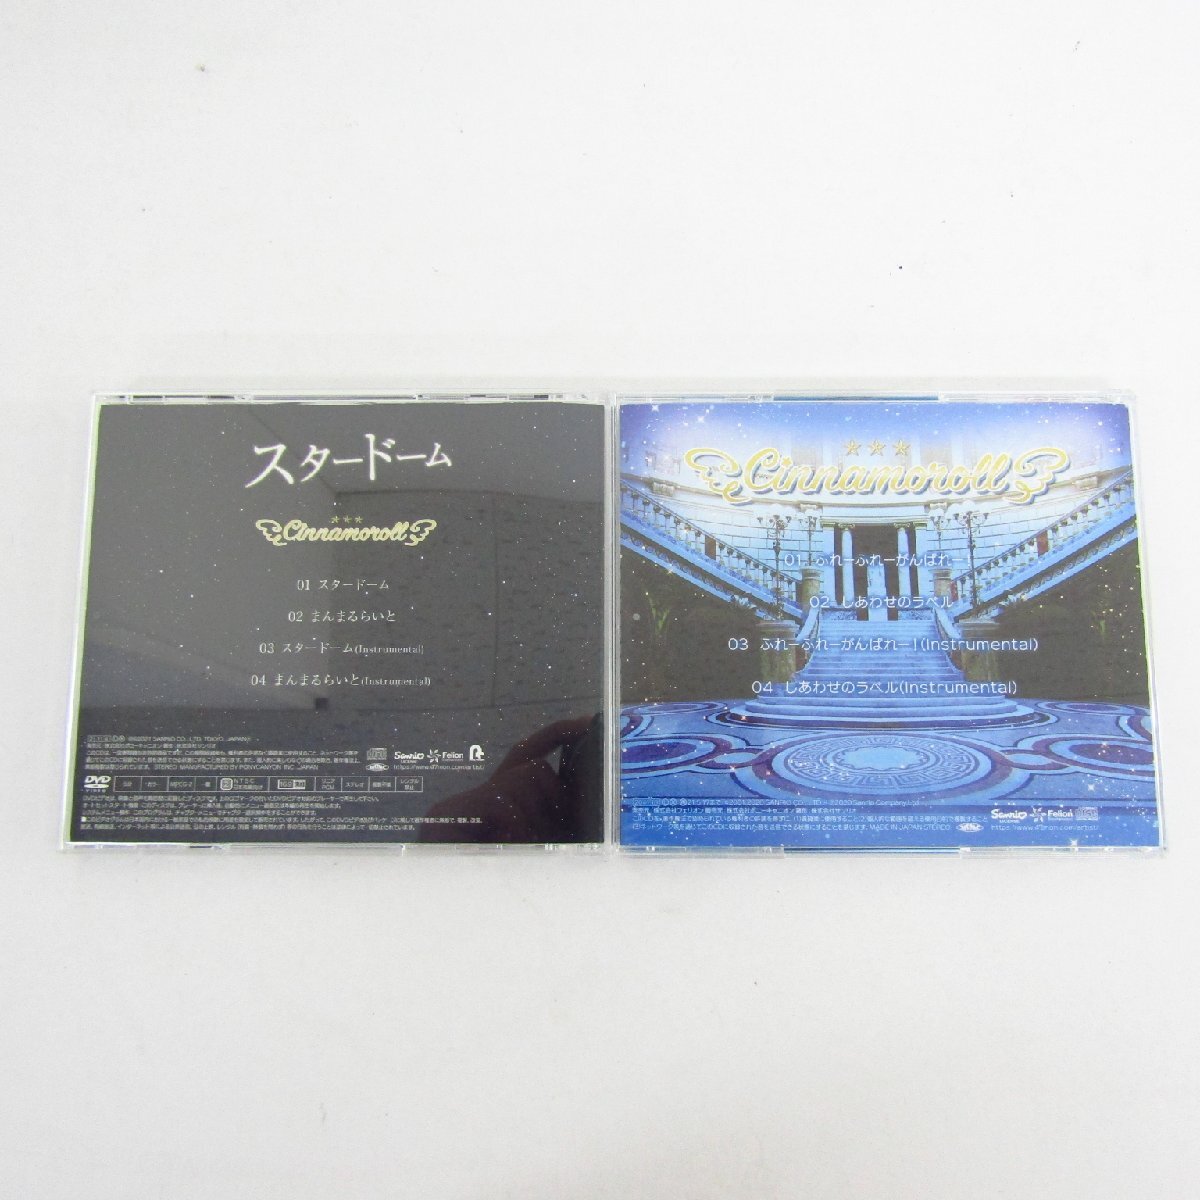 シナモロール スタードーム / ふれーふれーがんばれー!/しあわせのラベル CD まとめ 2枚セット 〓A9758_画像2